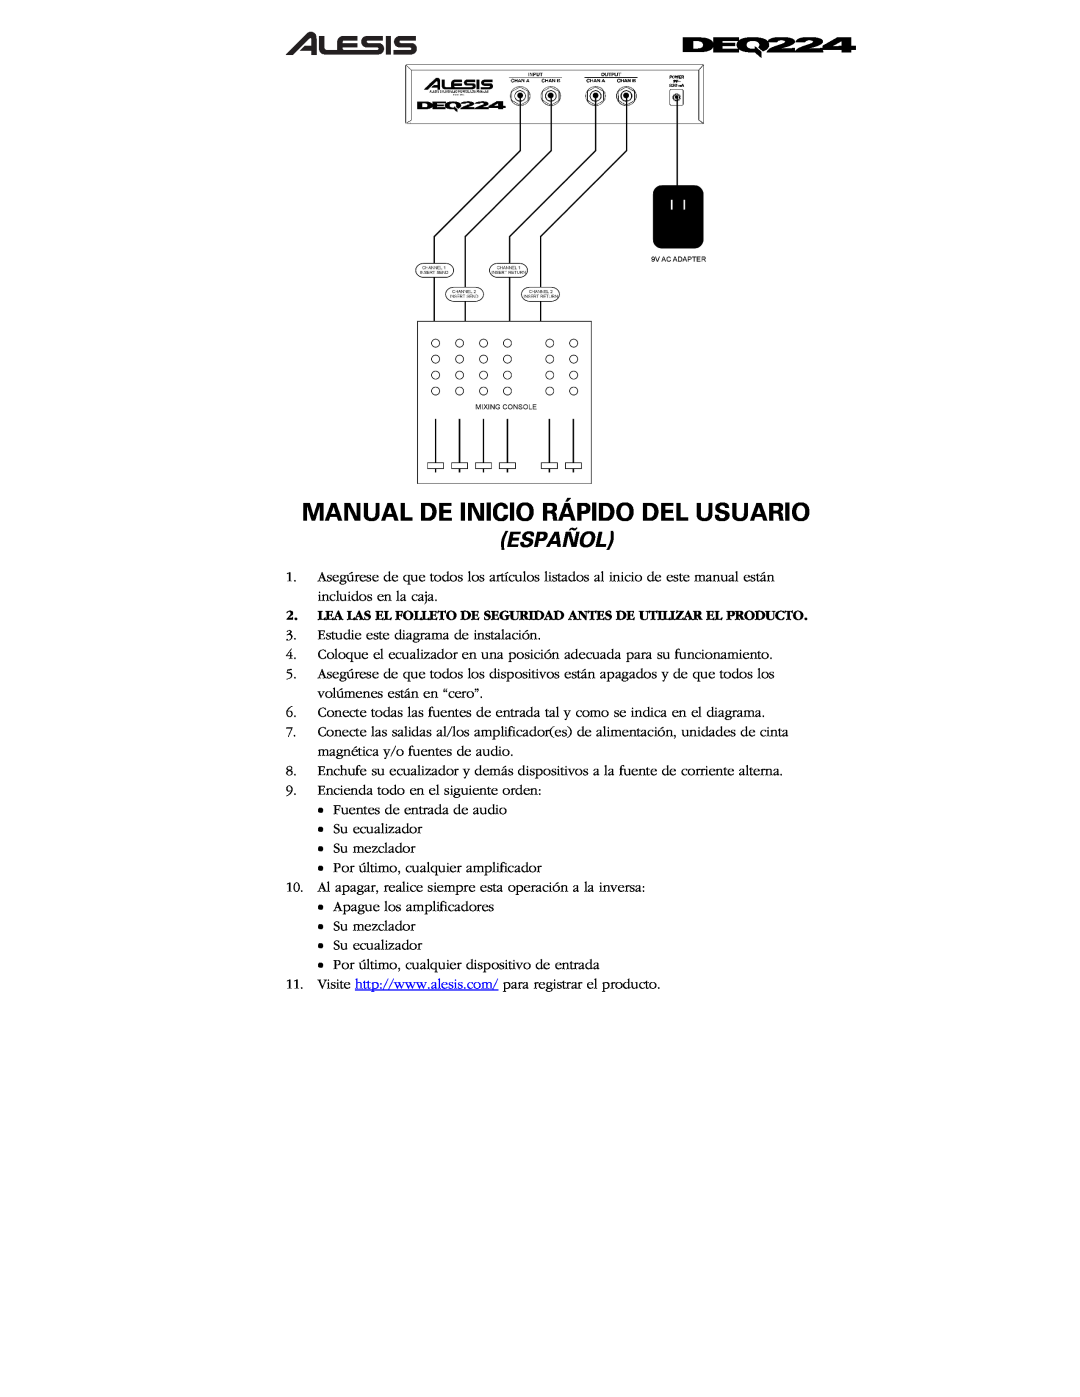 Alesis DEQ224 quick start Manual De Inicio Rápido Del Usuario, Español 